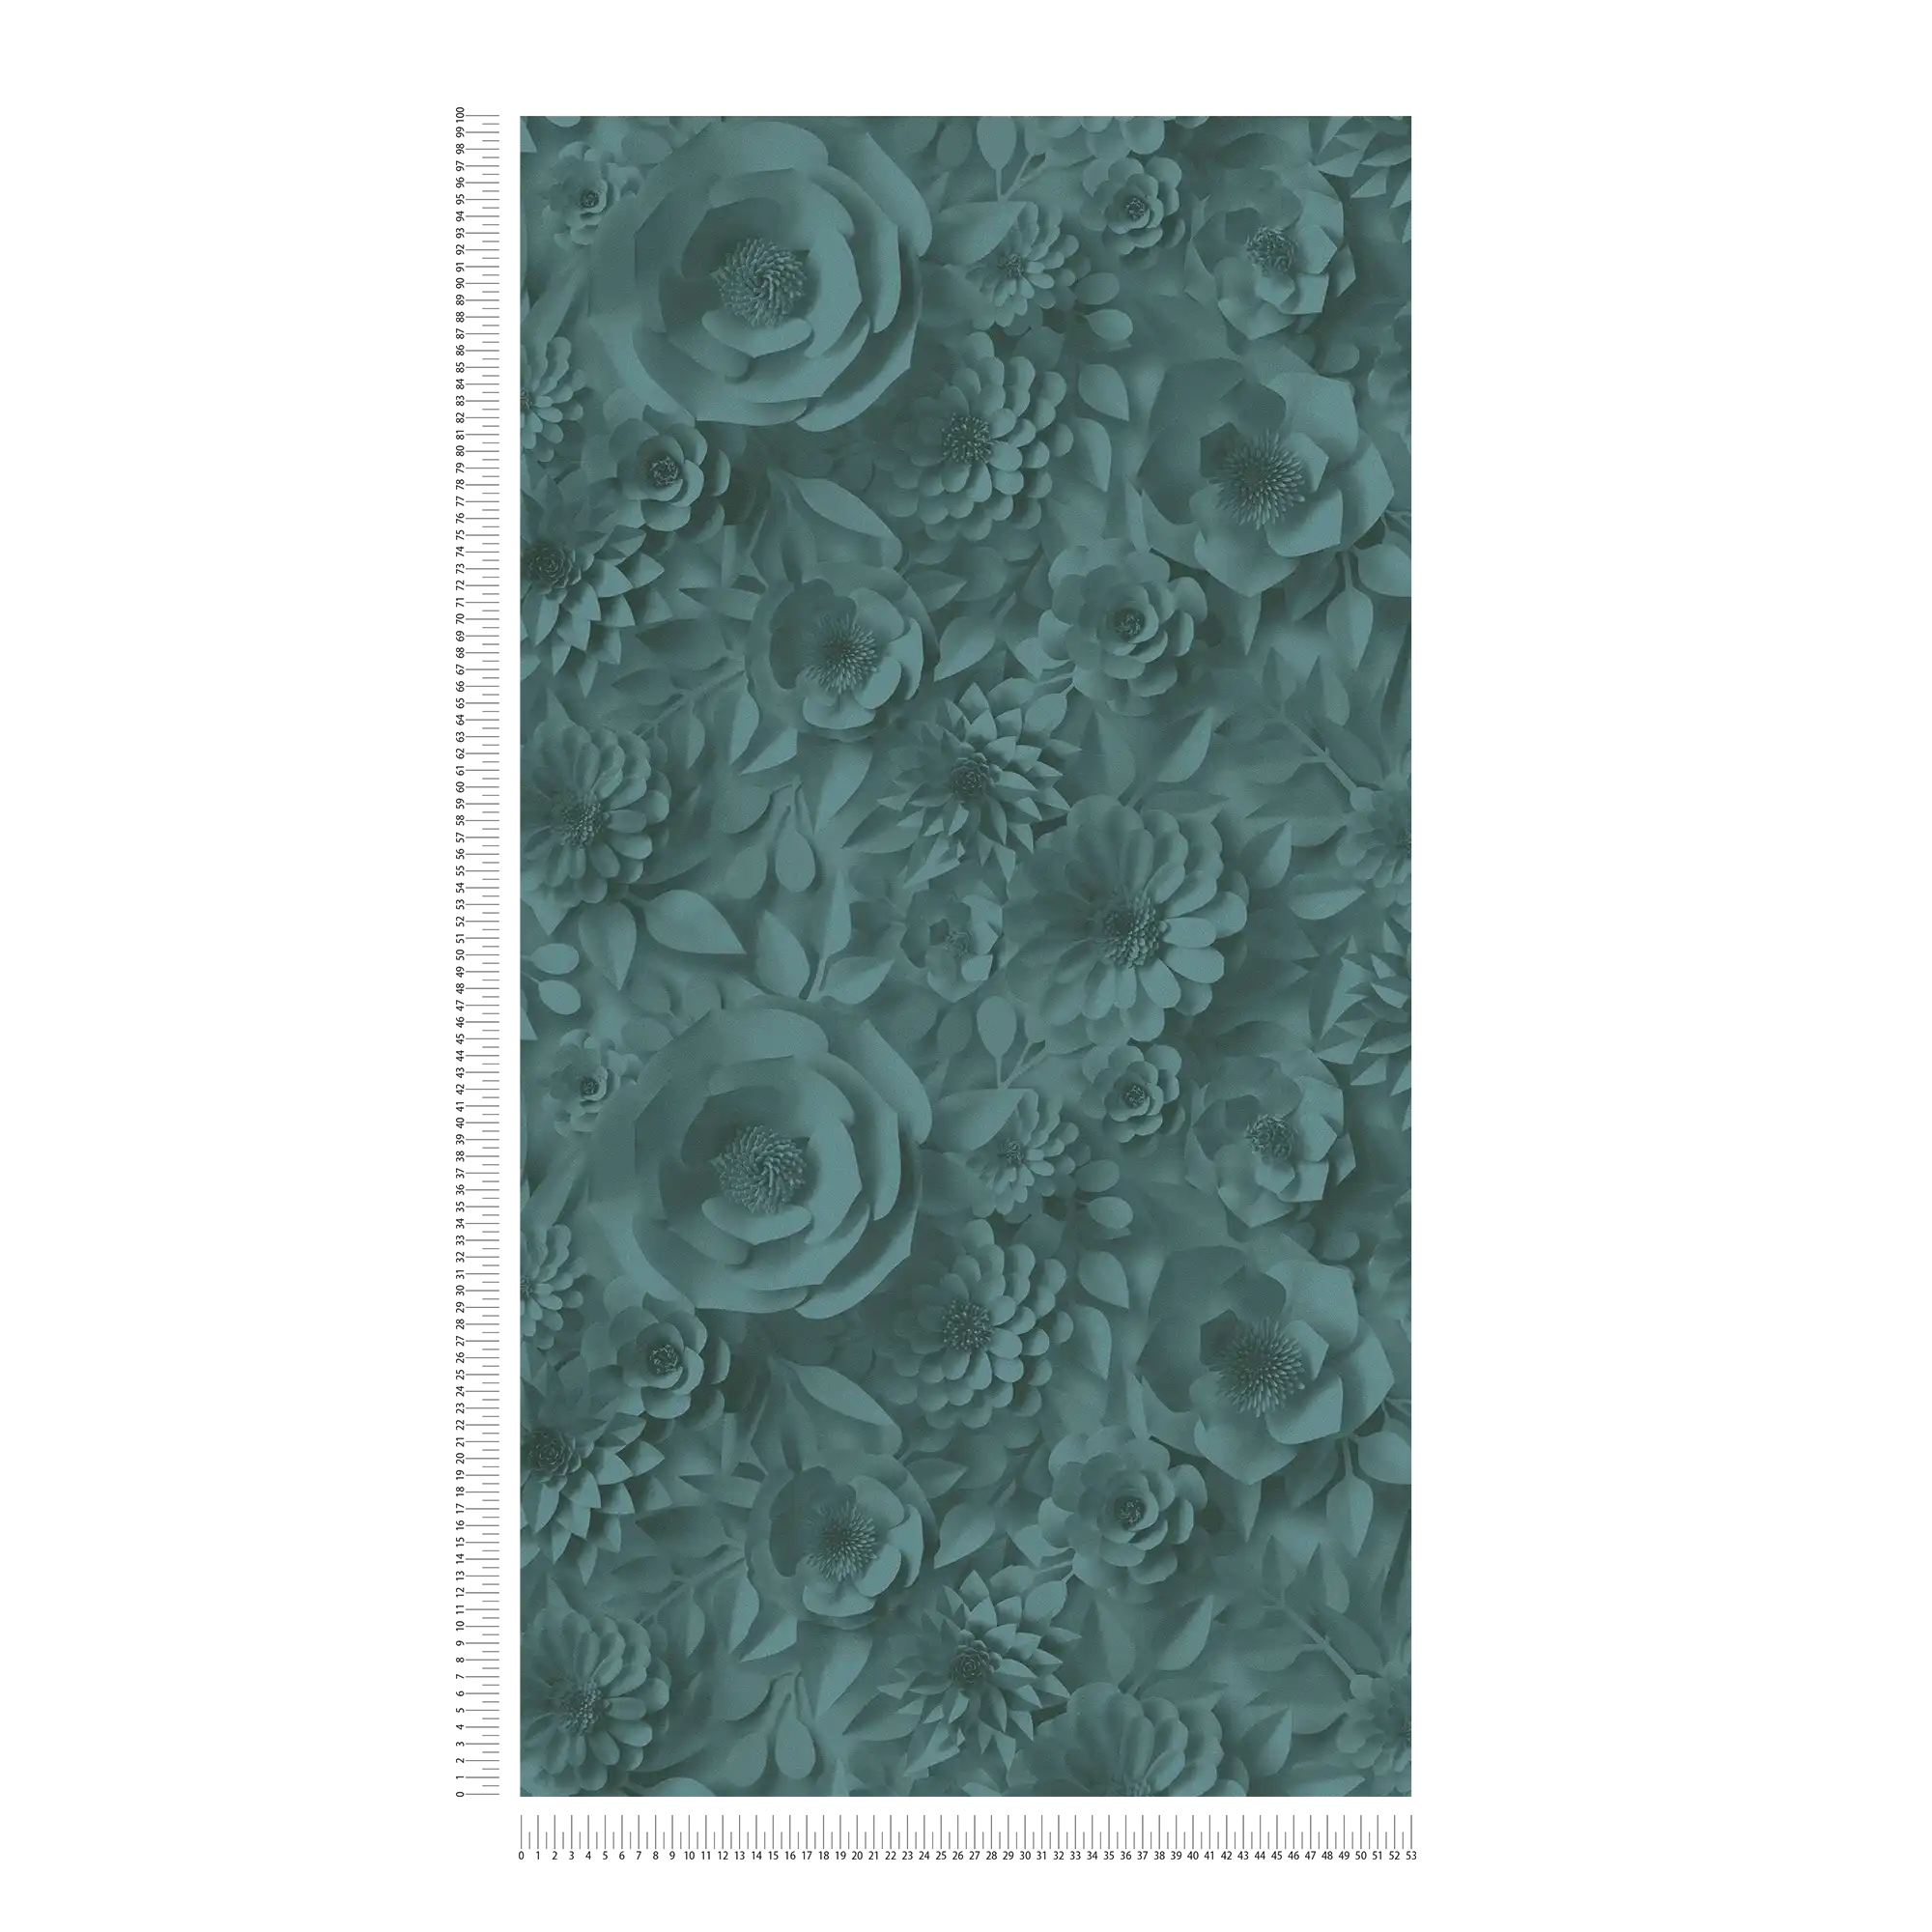             Carta da parati 3D con fiori di carta, motivo grafico floreale - Verde
        